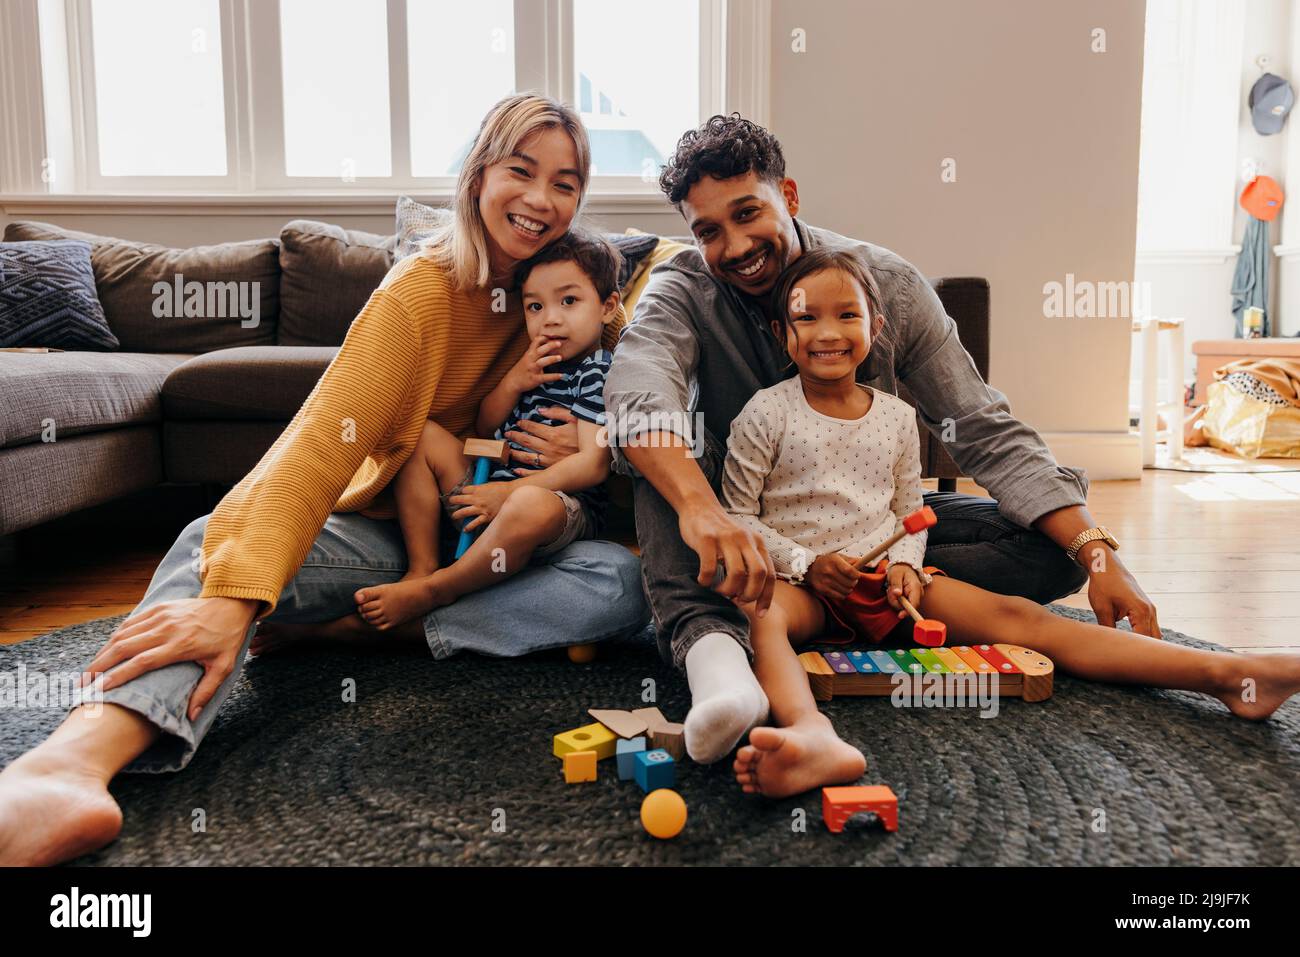 Junge Familie lächelt fröhlich in ihrem Wohnzimmer zu Hause. Zwei liebevolle Eltern, die während der Spielzeit mit ihrem Sohn und ihrer Tochter sitzen. Vierköpfige Familie Stockfoto